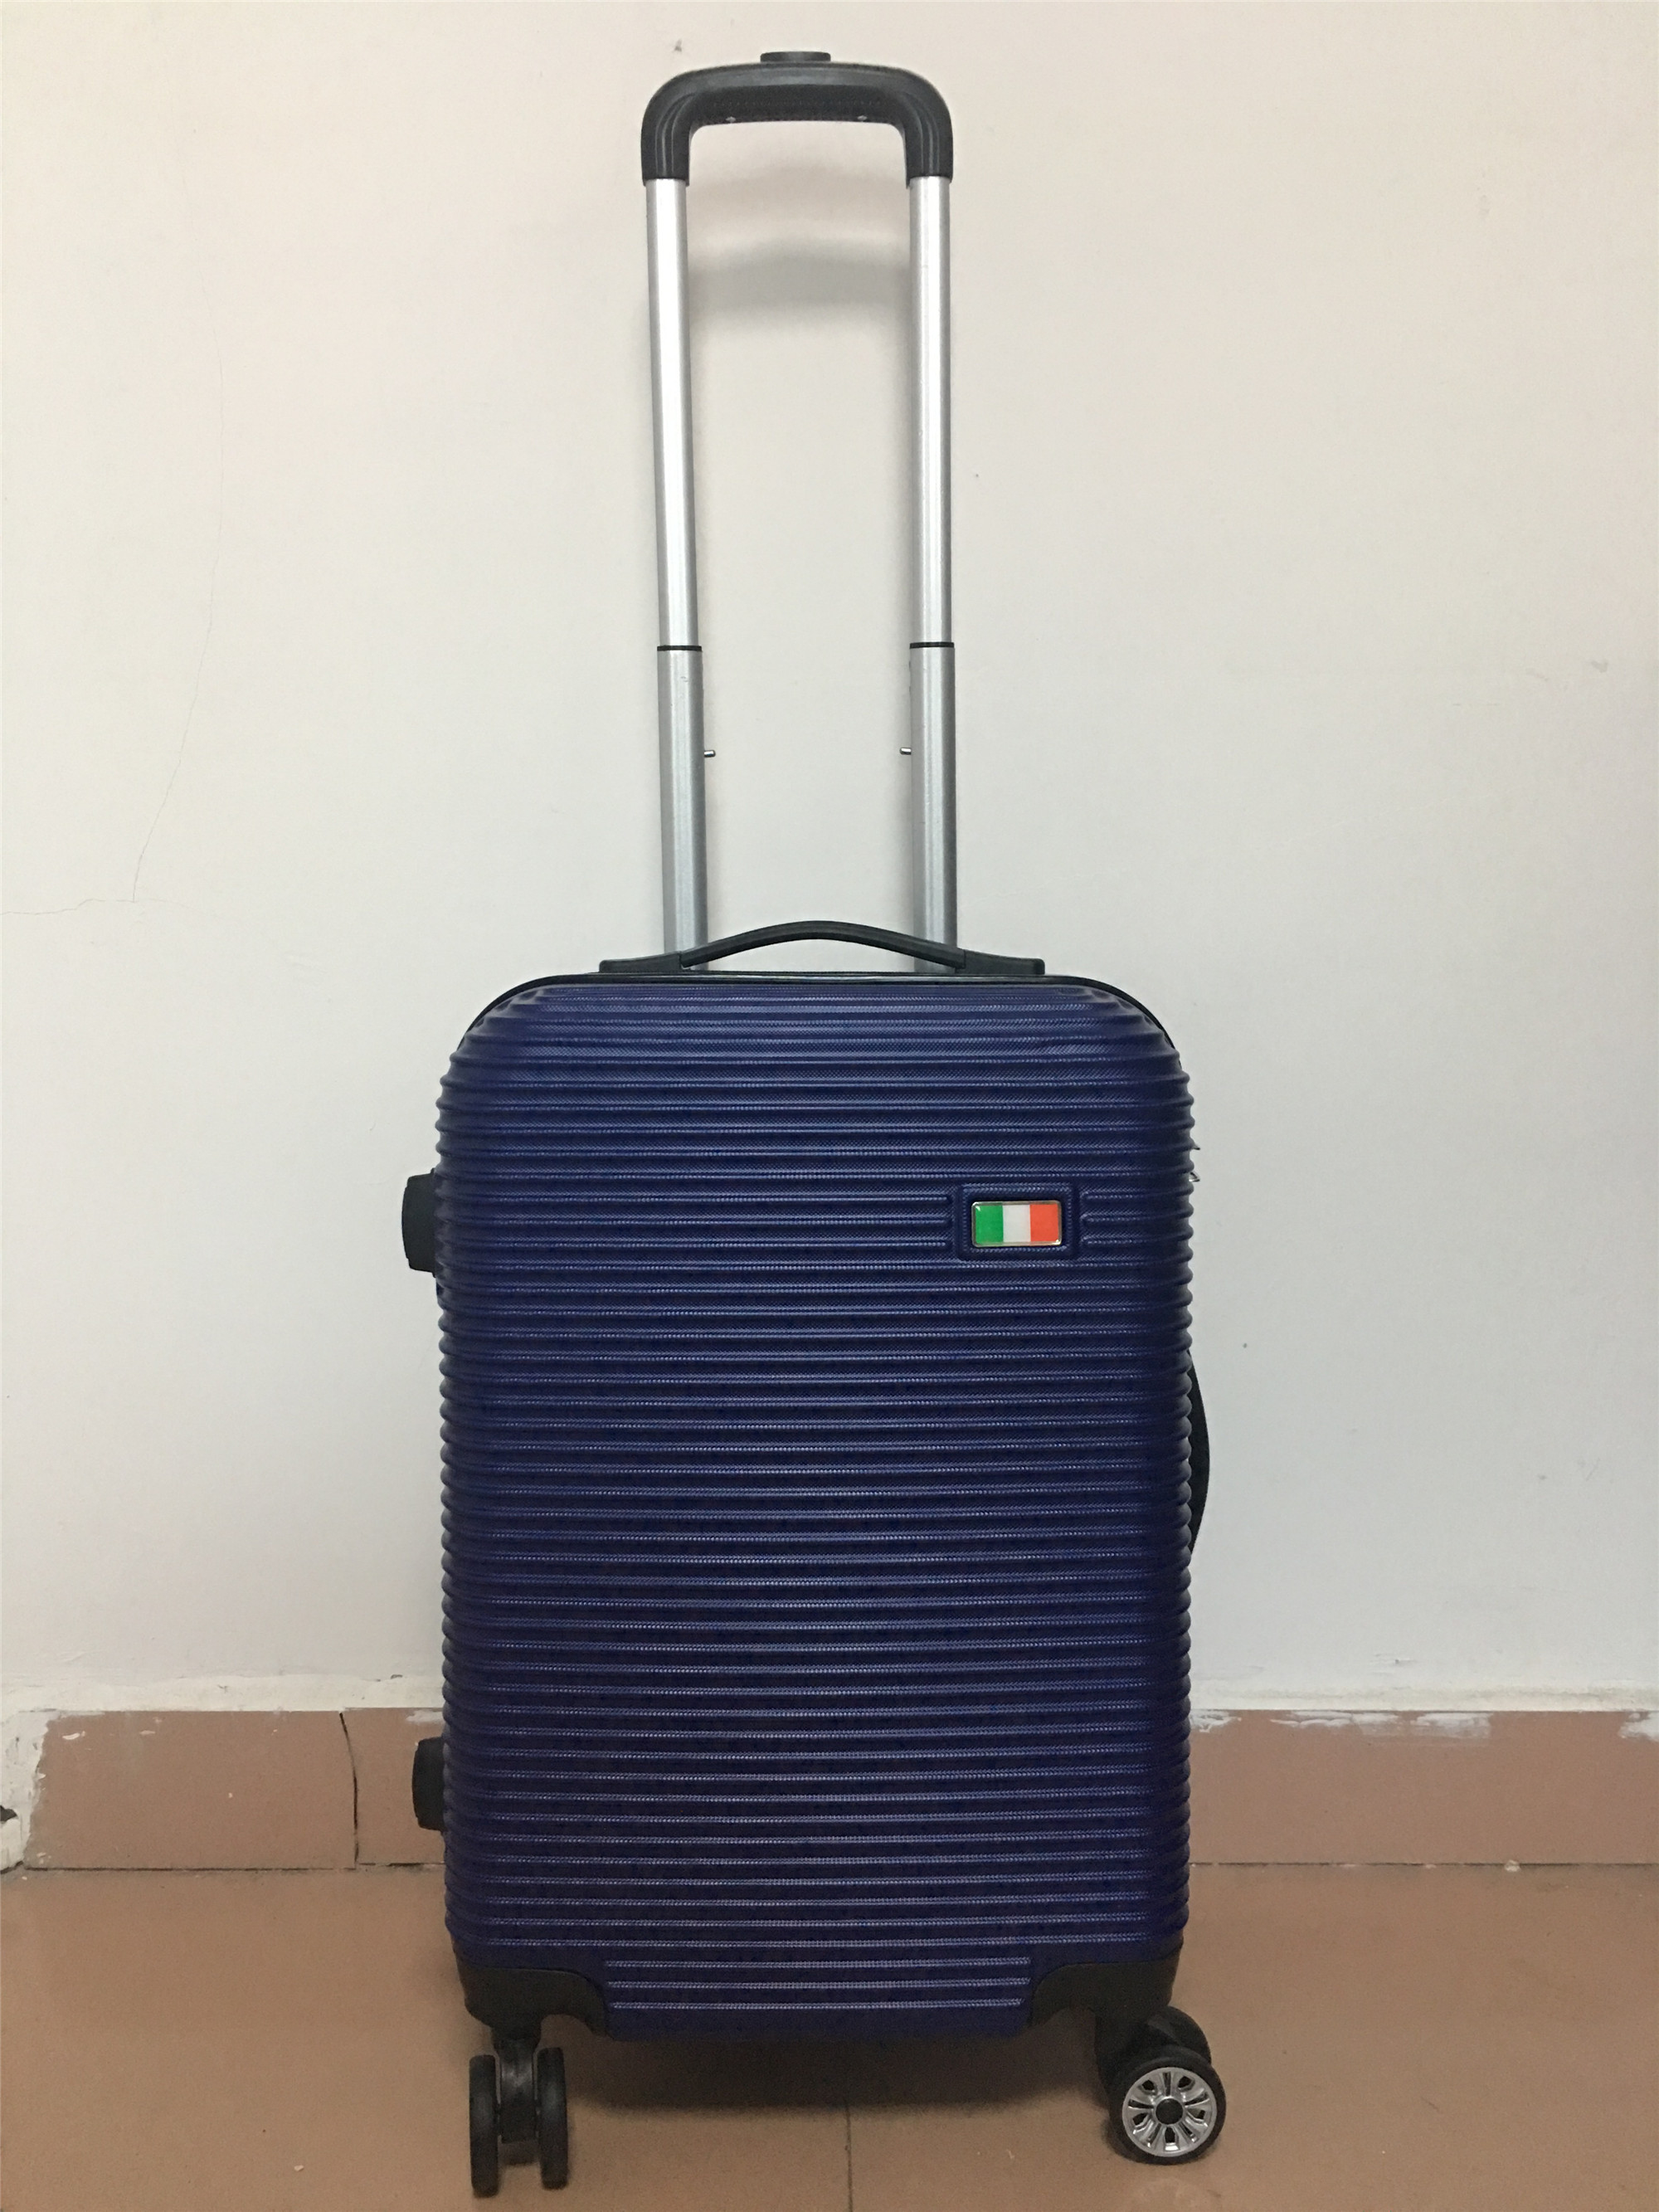 yanteng great designer luggage with customized logo